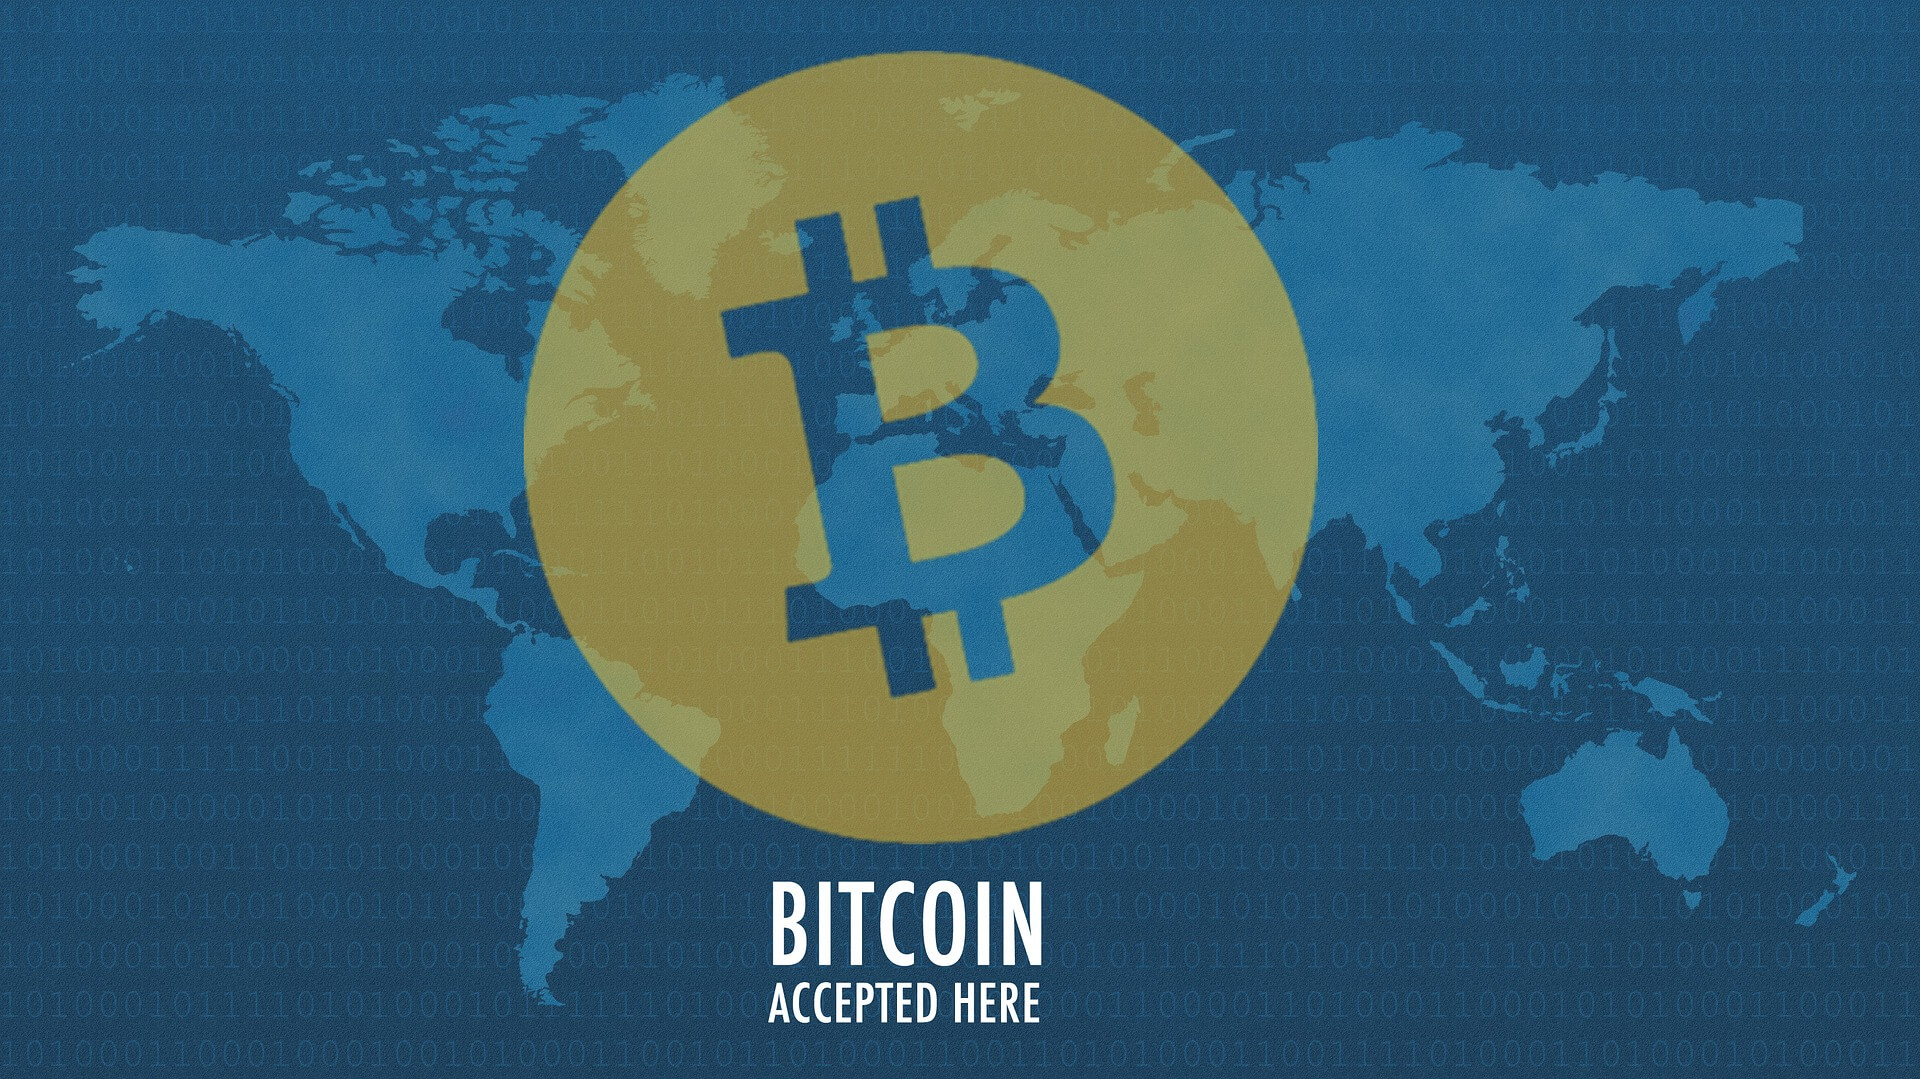 Akzeptanz von Bitcoin in der Welt